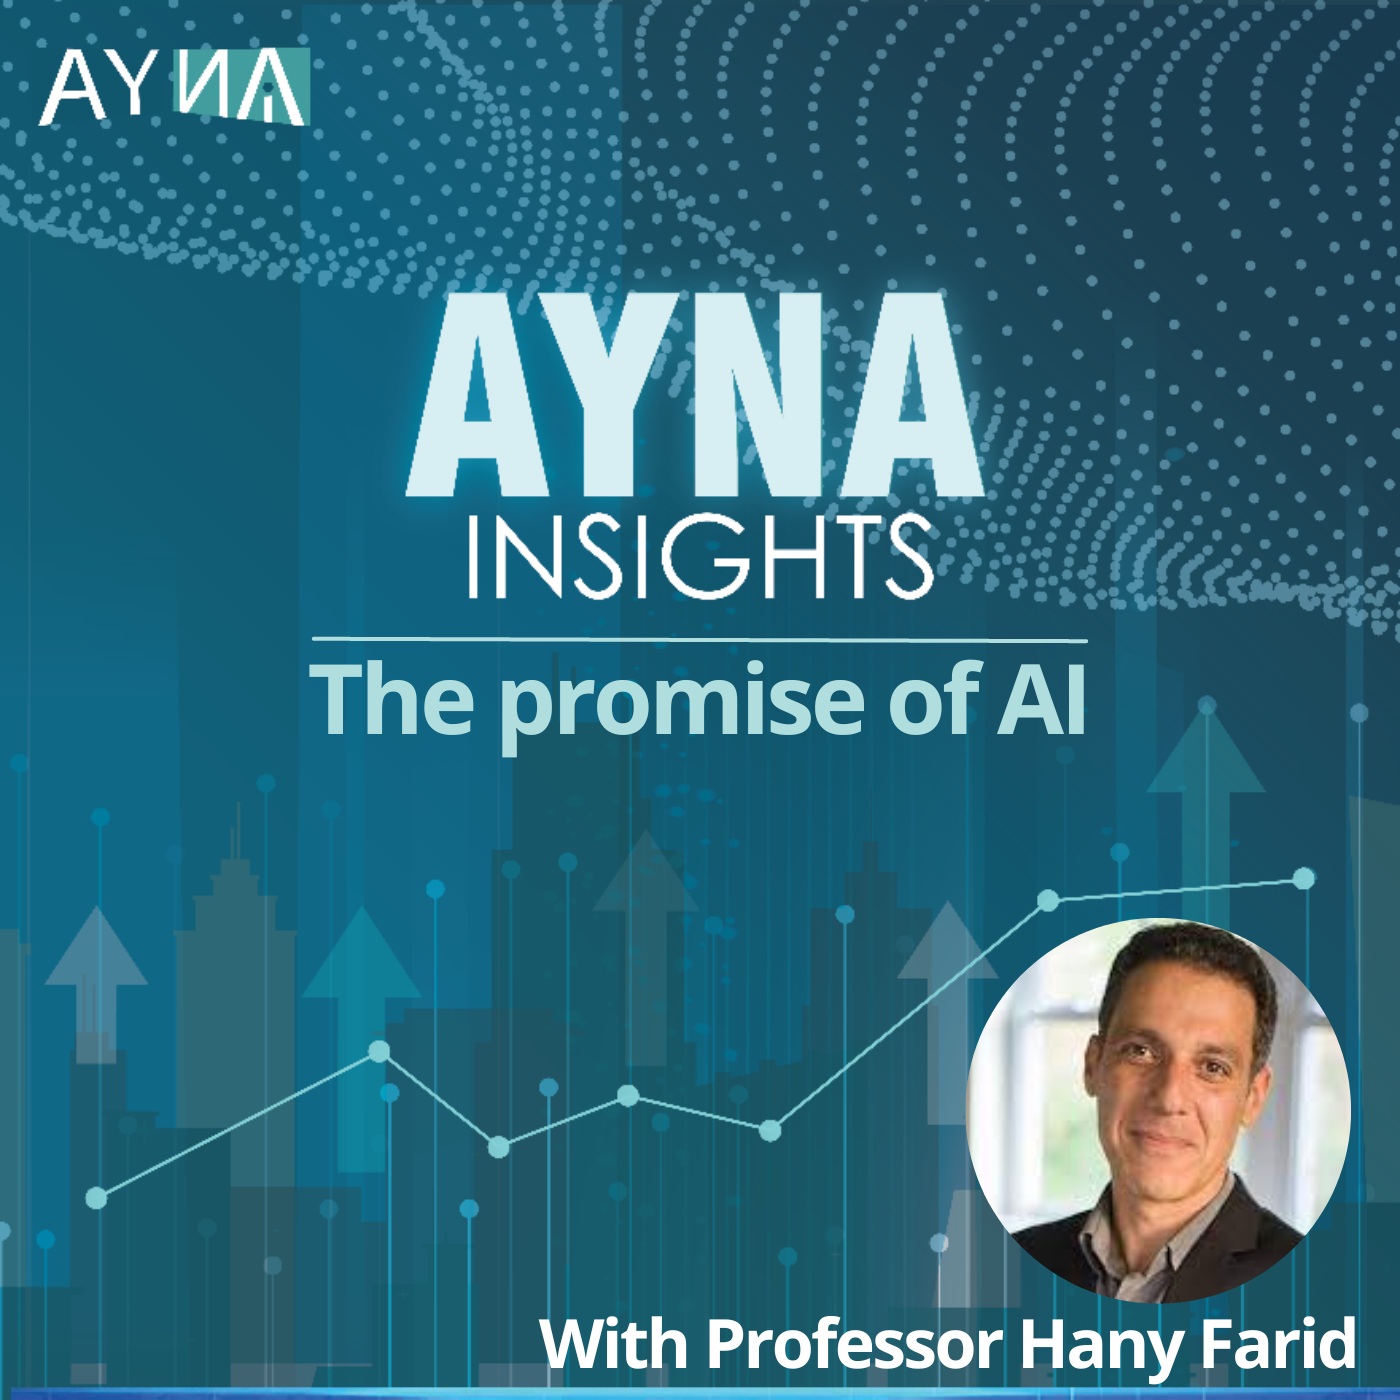 Professor Hany Farid: The promise of AI